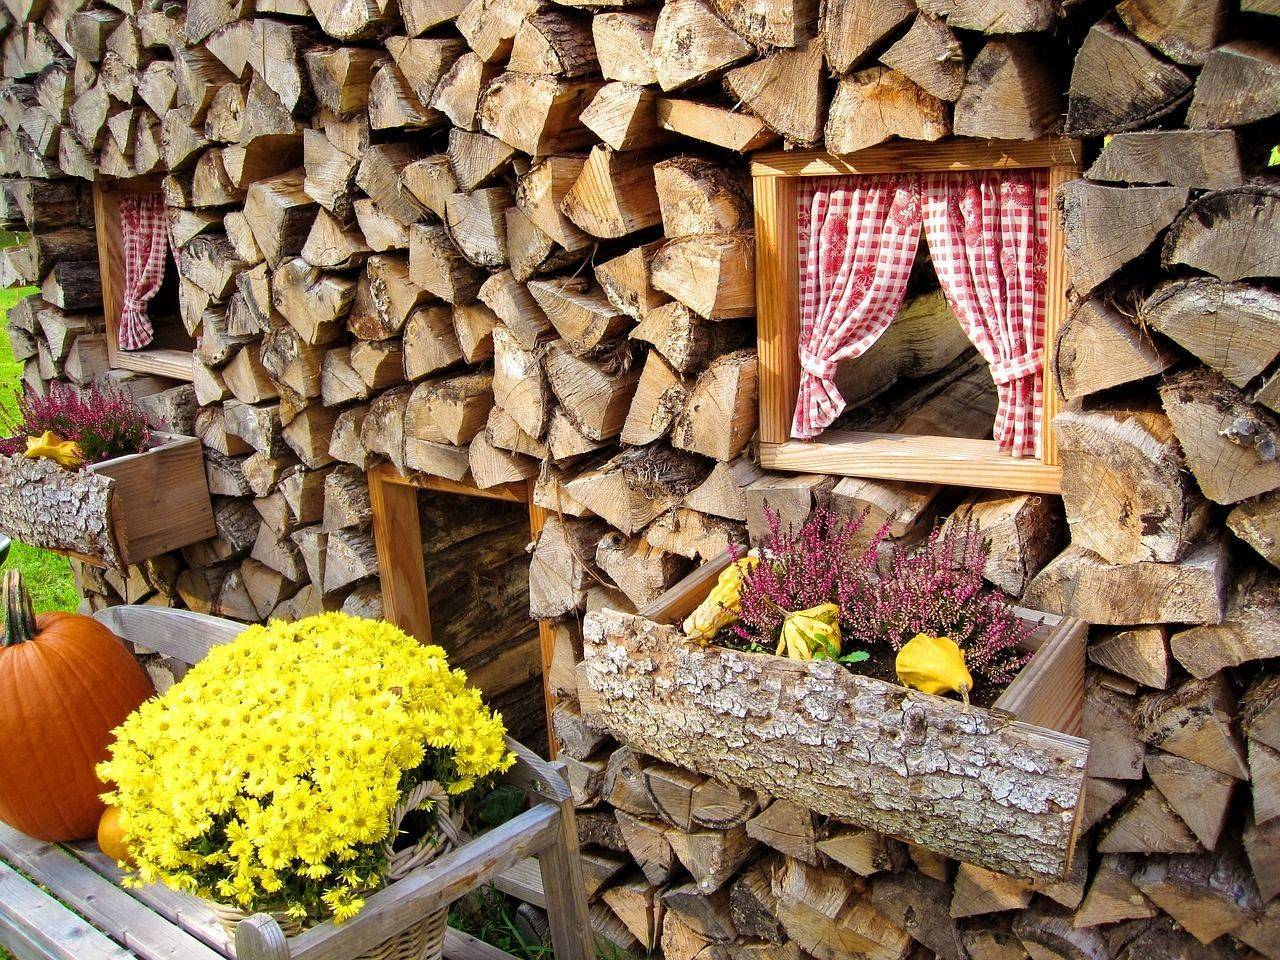 Как красиво сложить дрова на даче и во дворе - фото